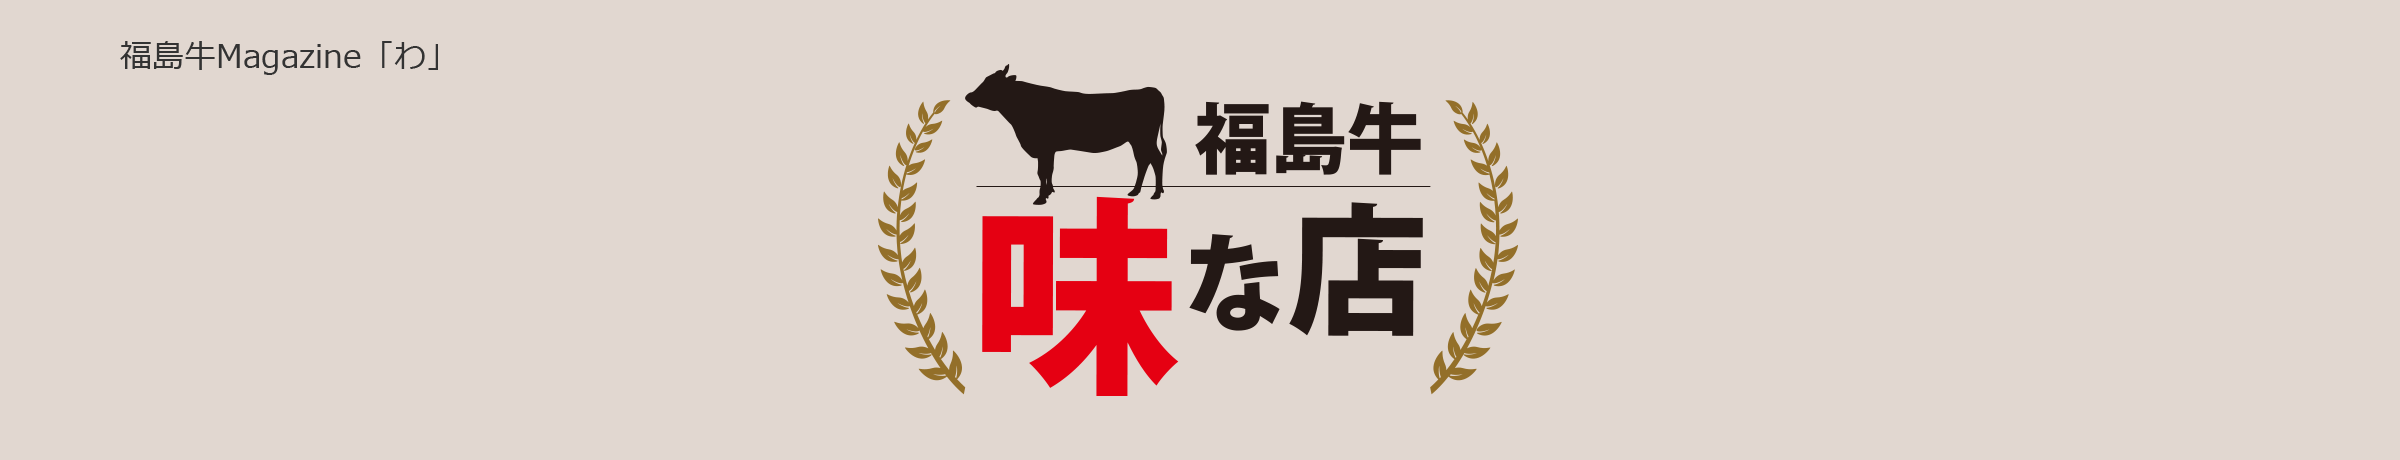 福島牛Magazine「わ」 福島牛 味な店